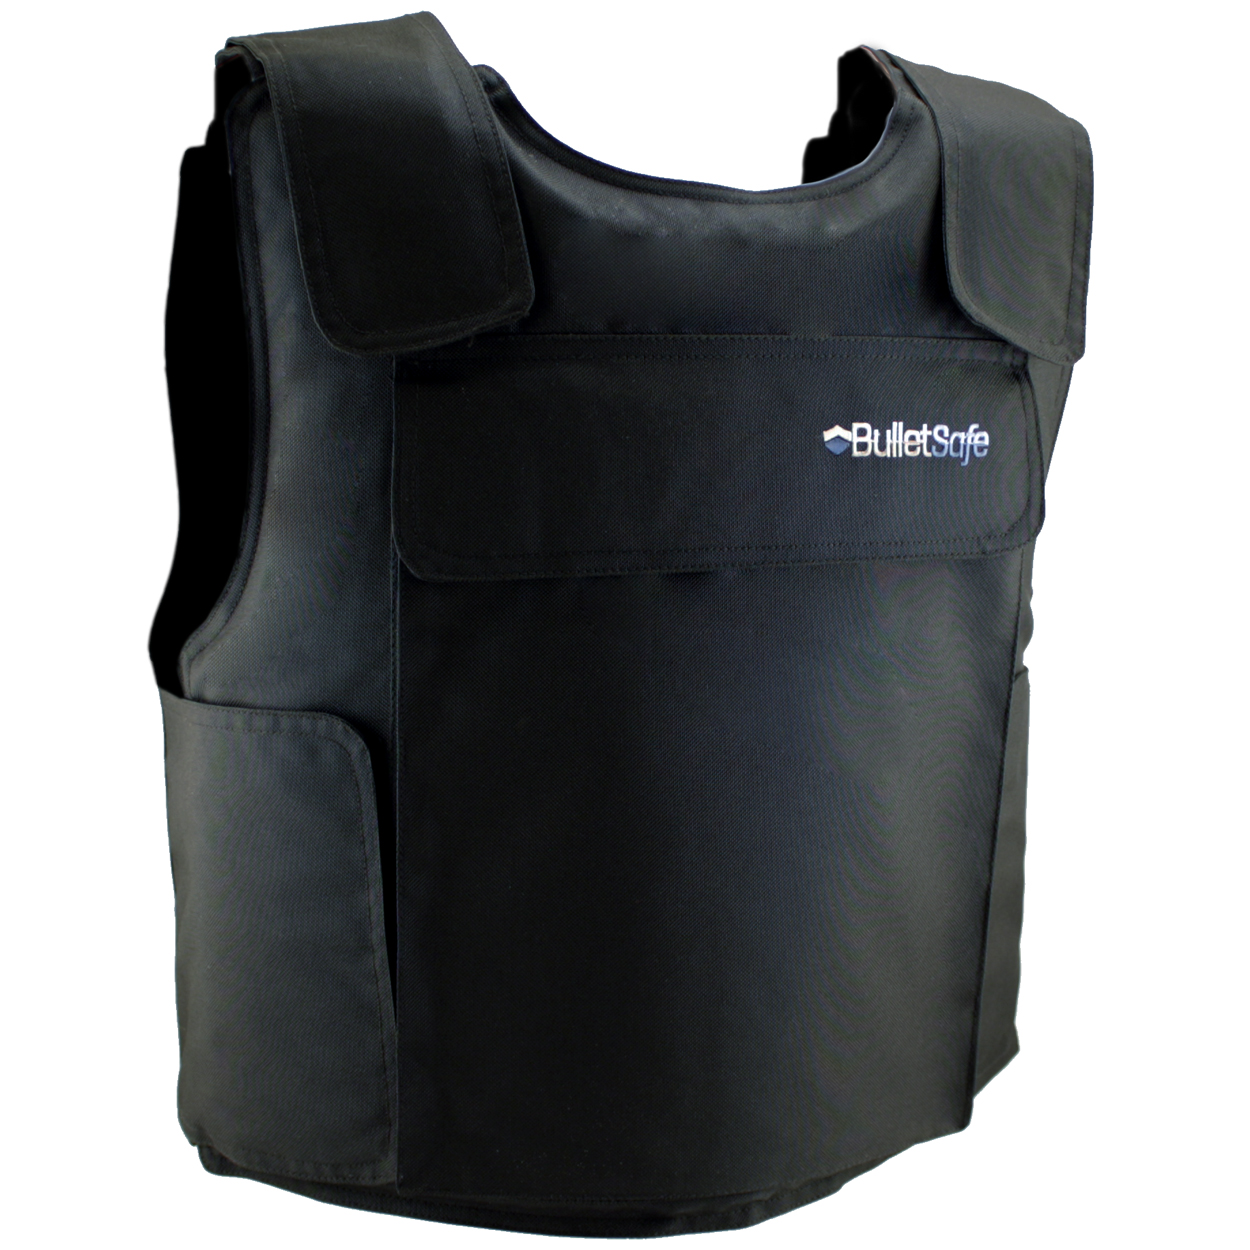 Bulletproof Vest Prot 4, Ballistic, Subtle